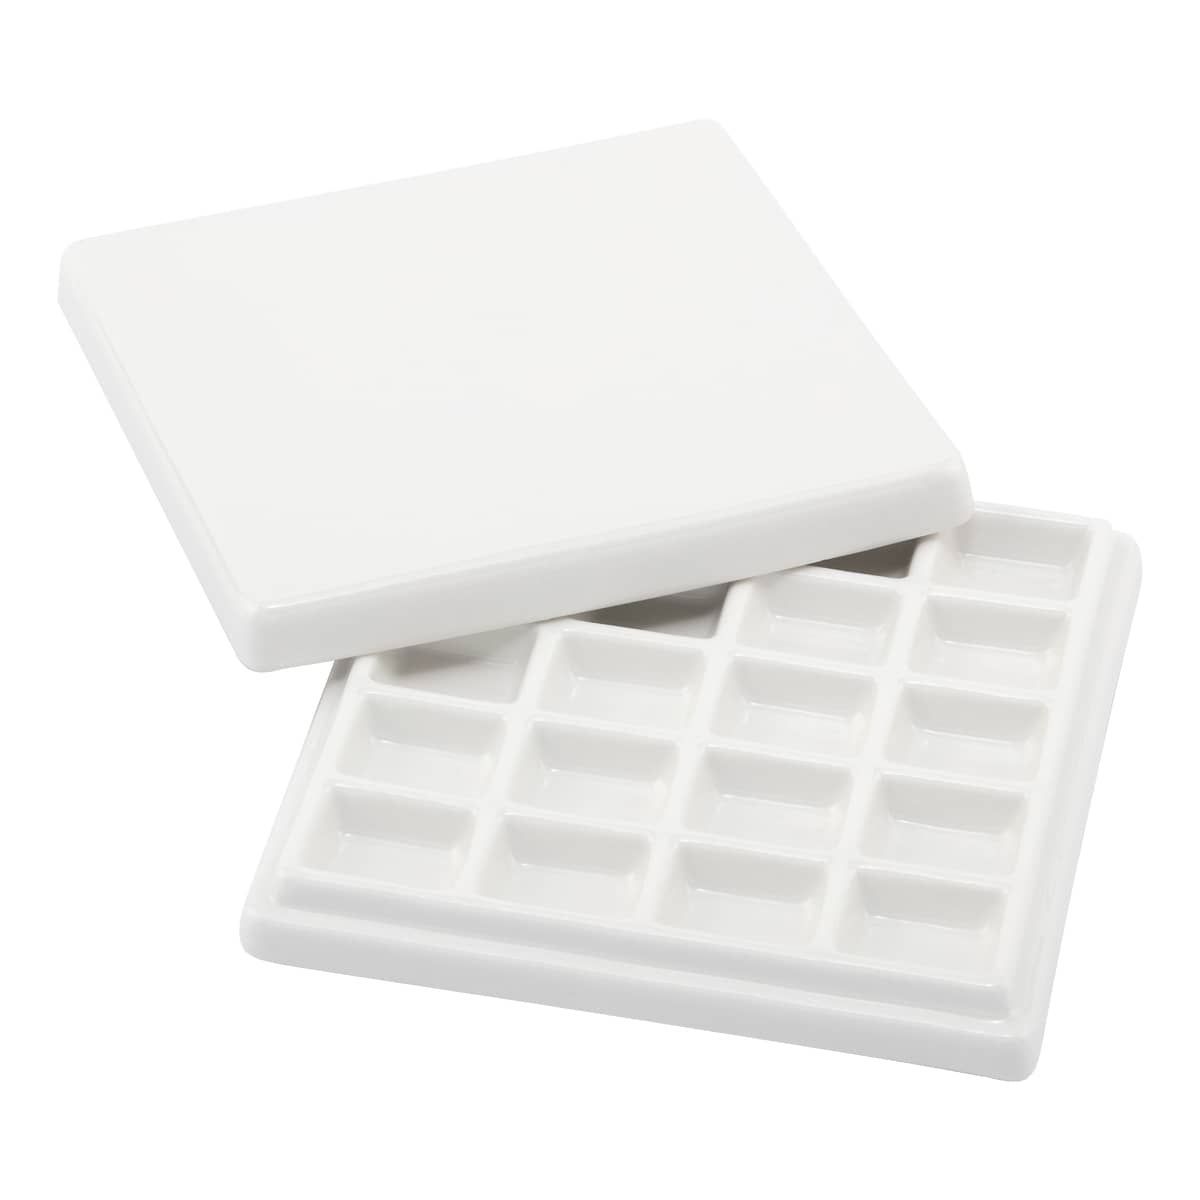 White Porcelain Ceramic Watercolor Palette 20 grids – Artbiz Supply